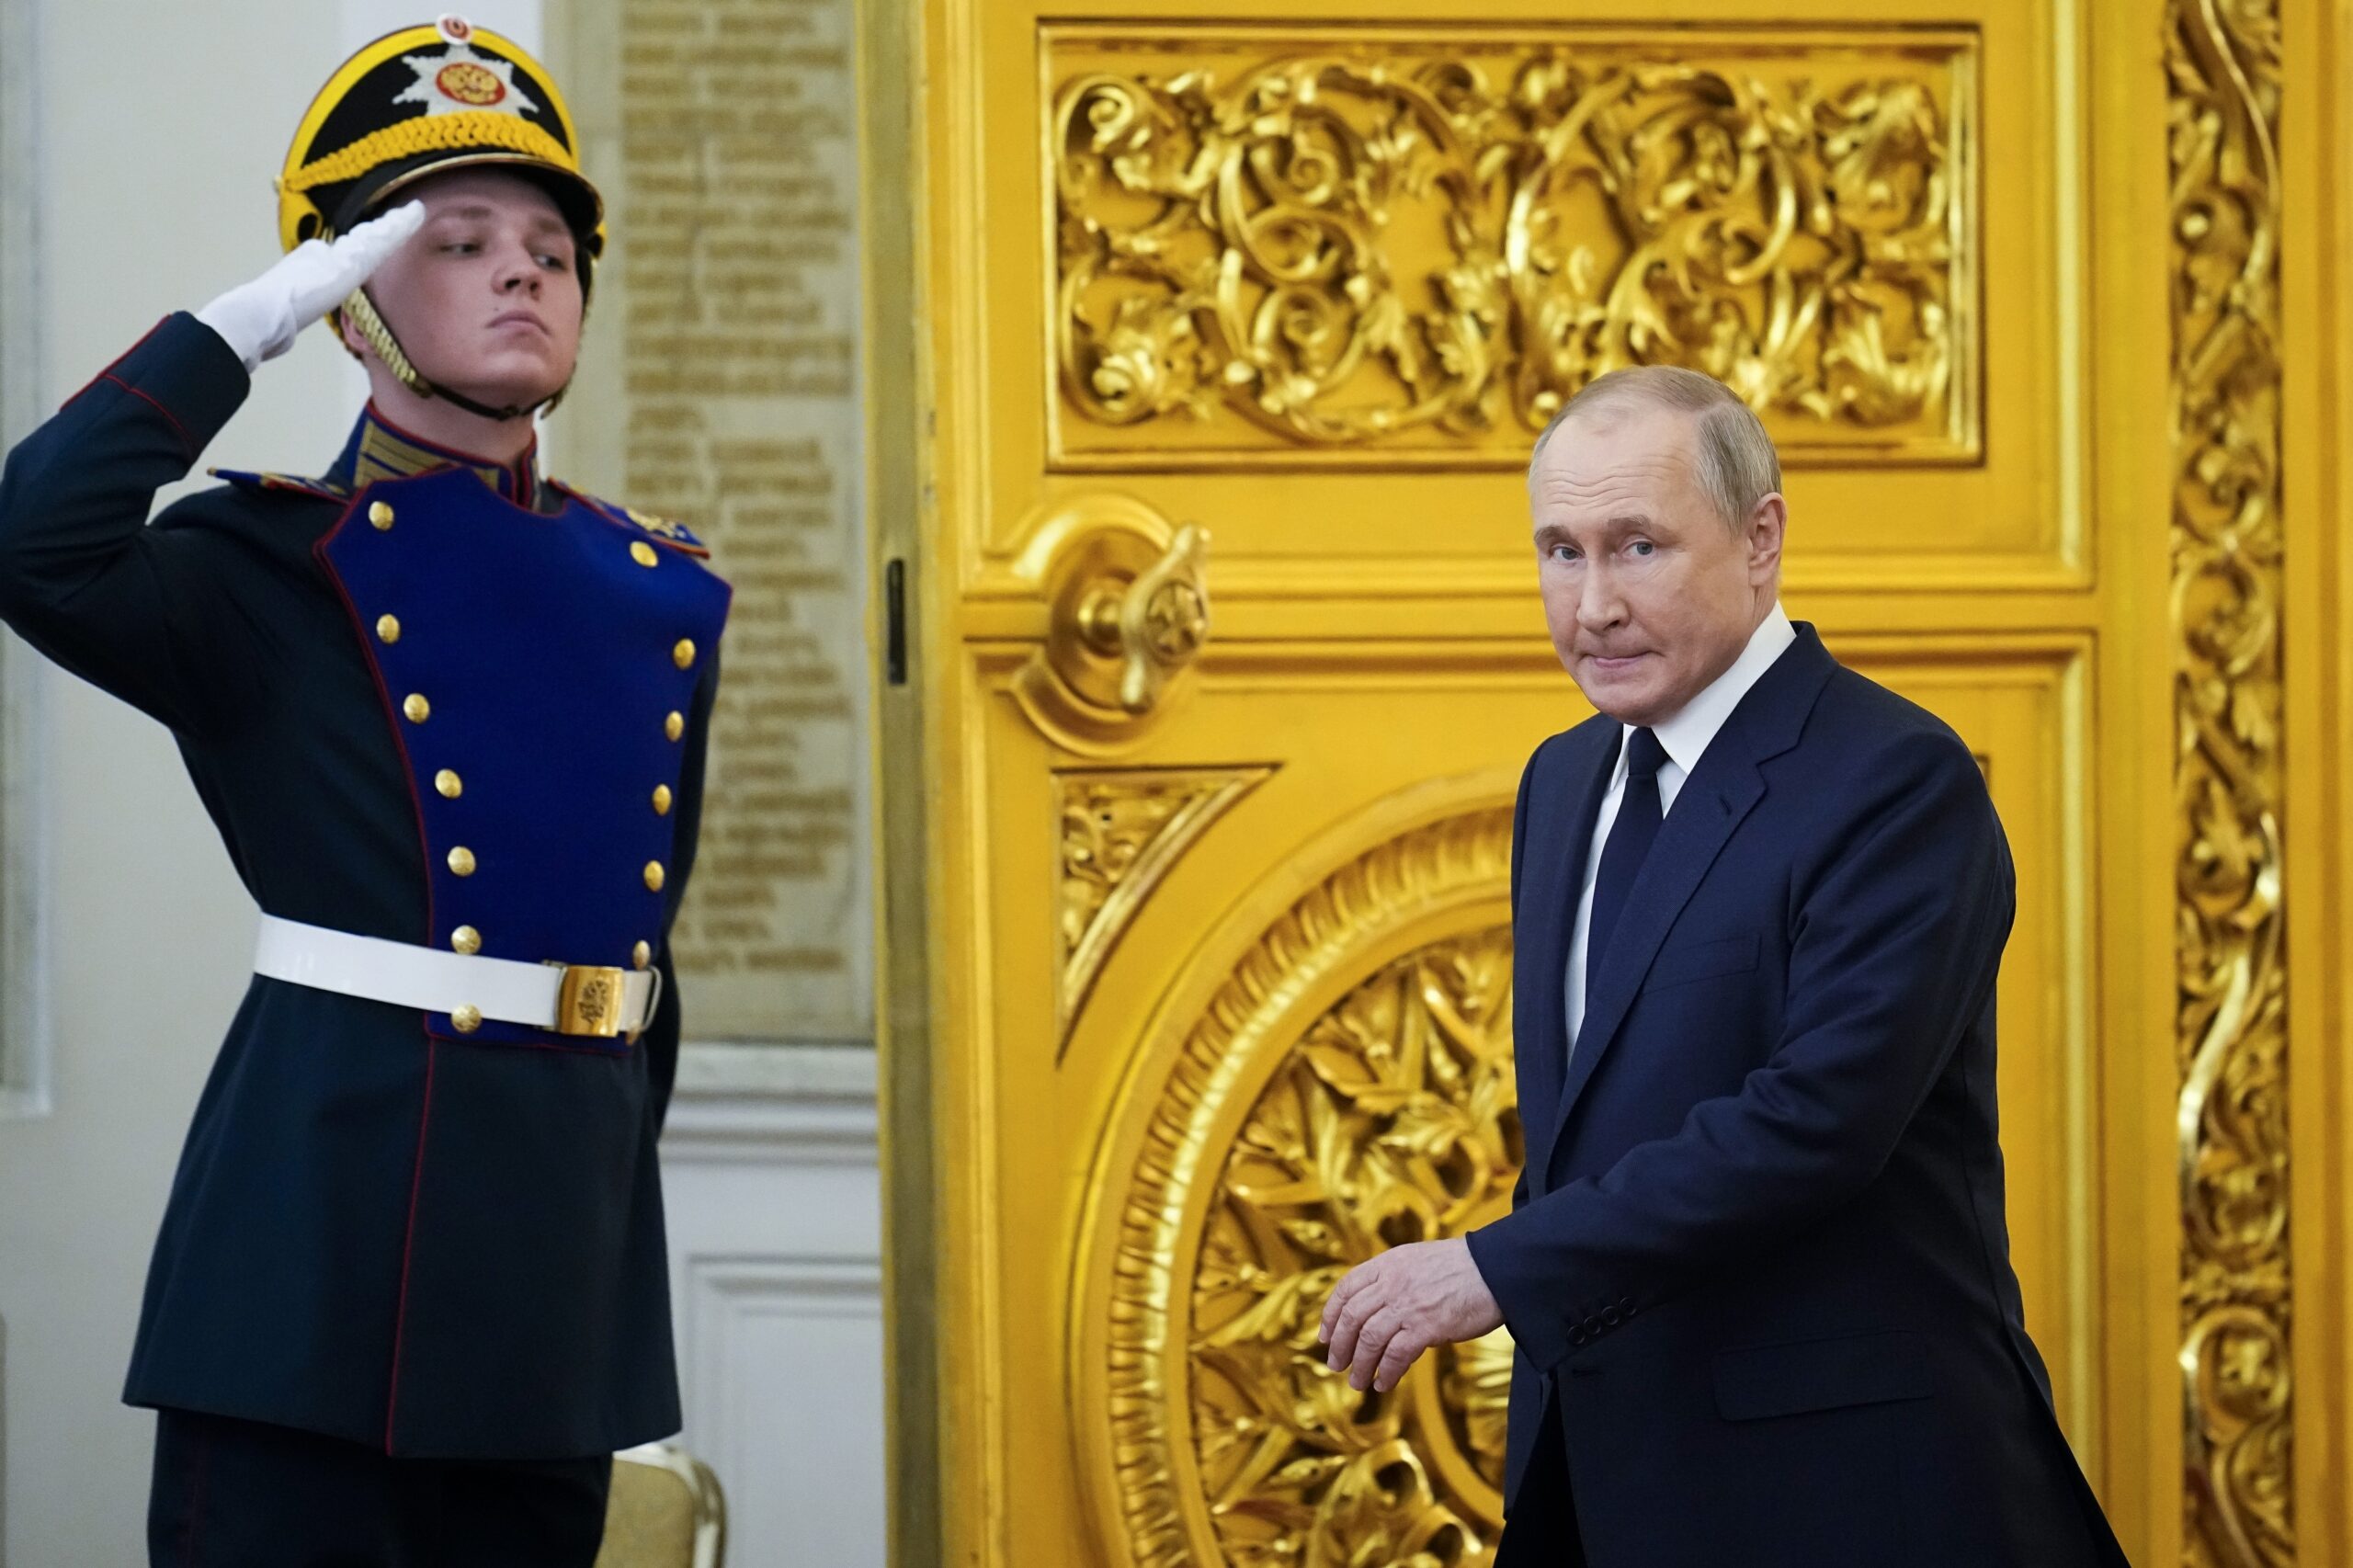 Putin läuft durch eine goldene Tür, neben ihm salutiert ein Wachmann